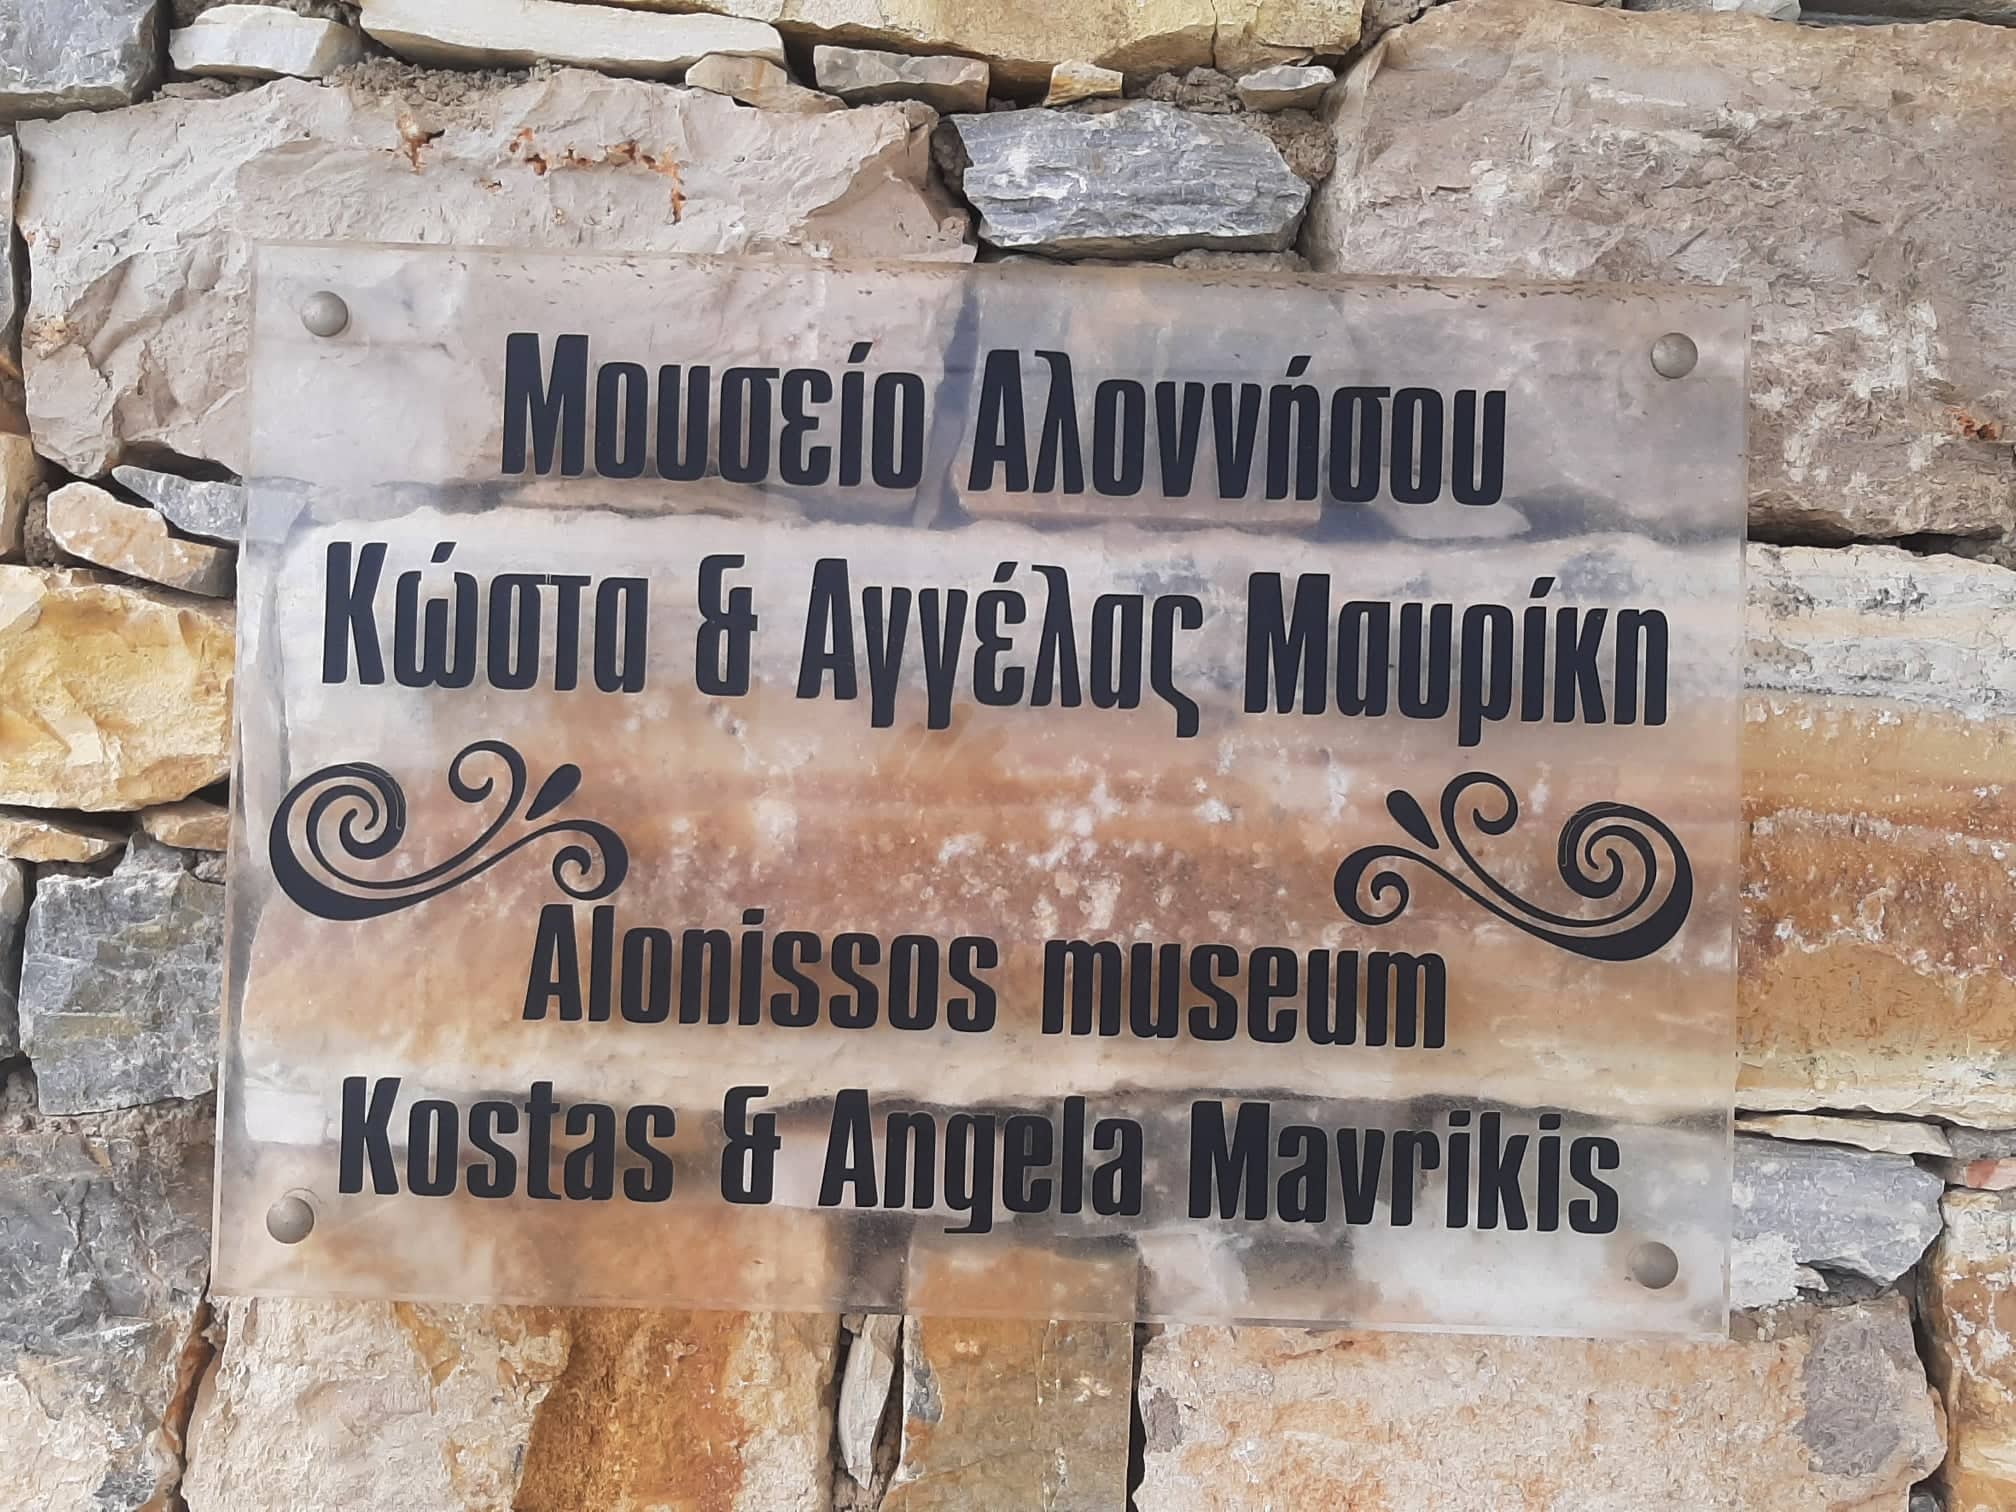 Μουσείο Αλοννήσου: Η Ιστορία και ο πολιτισμός του νησιού μέσα από το μεράκι ενός ιδιώτη